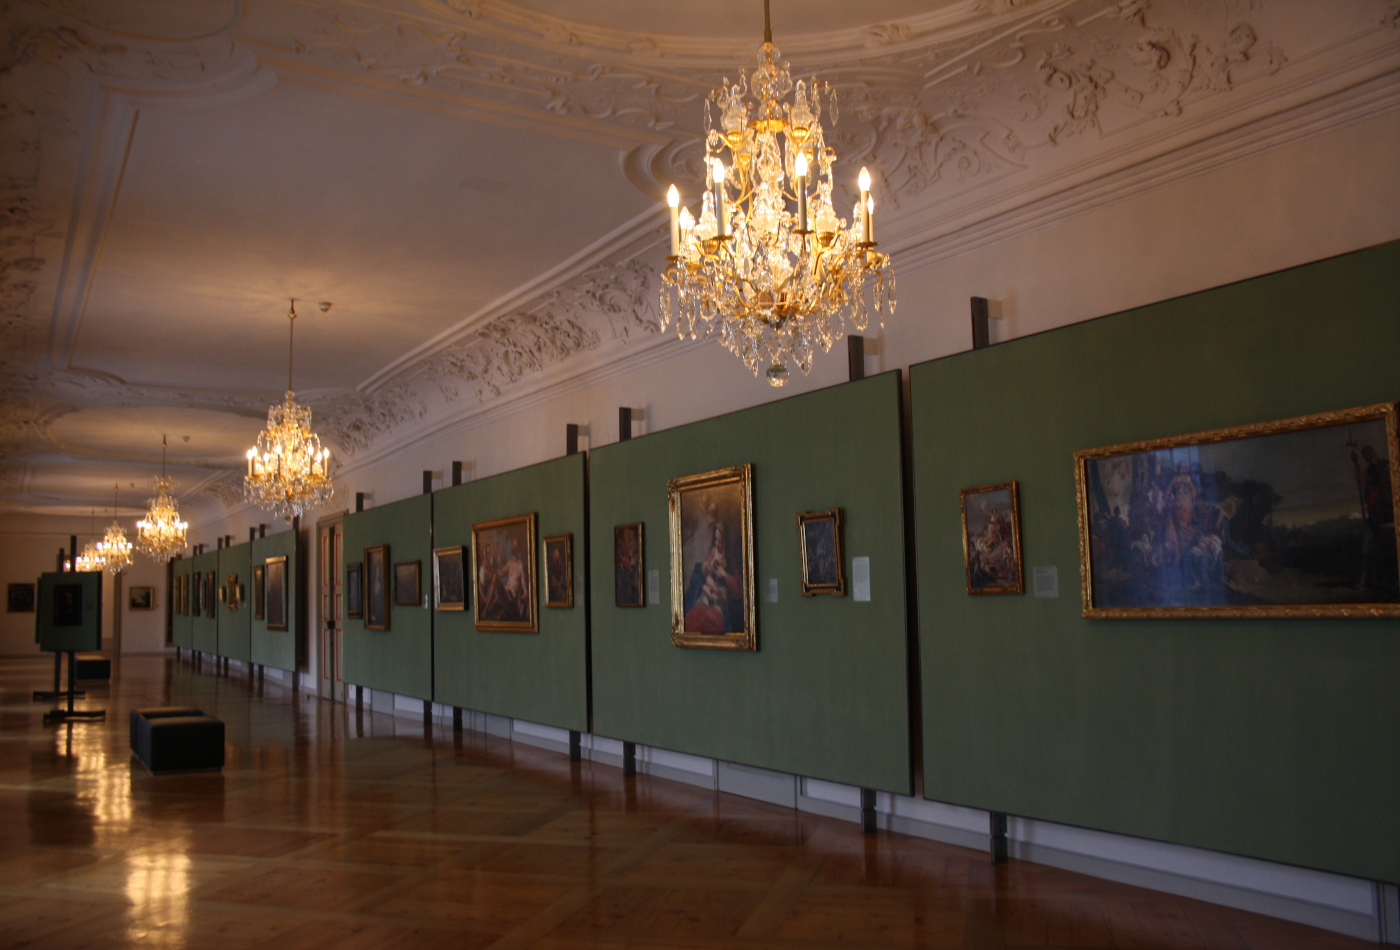 Blick in einen langen Flur der Barockgalerie, in der zahlreiche Gemälde hängen.